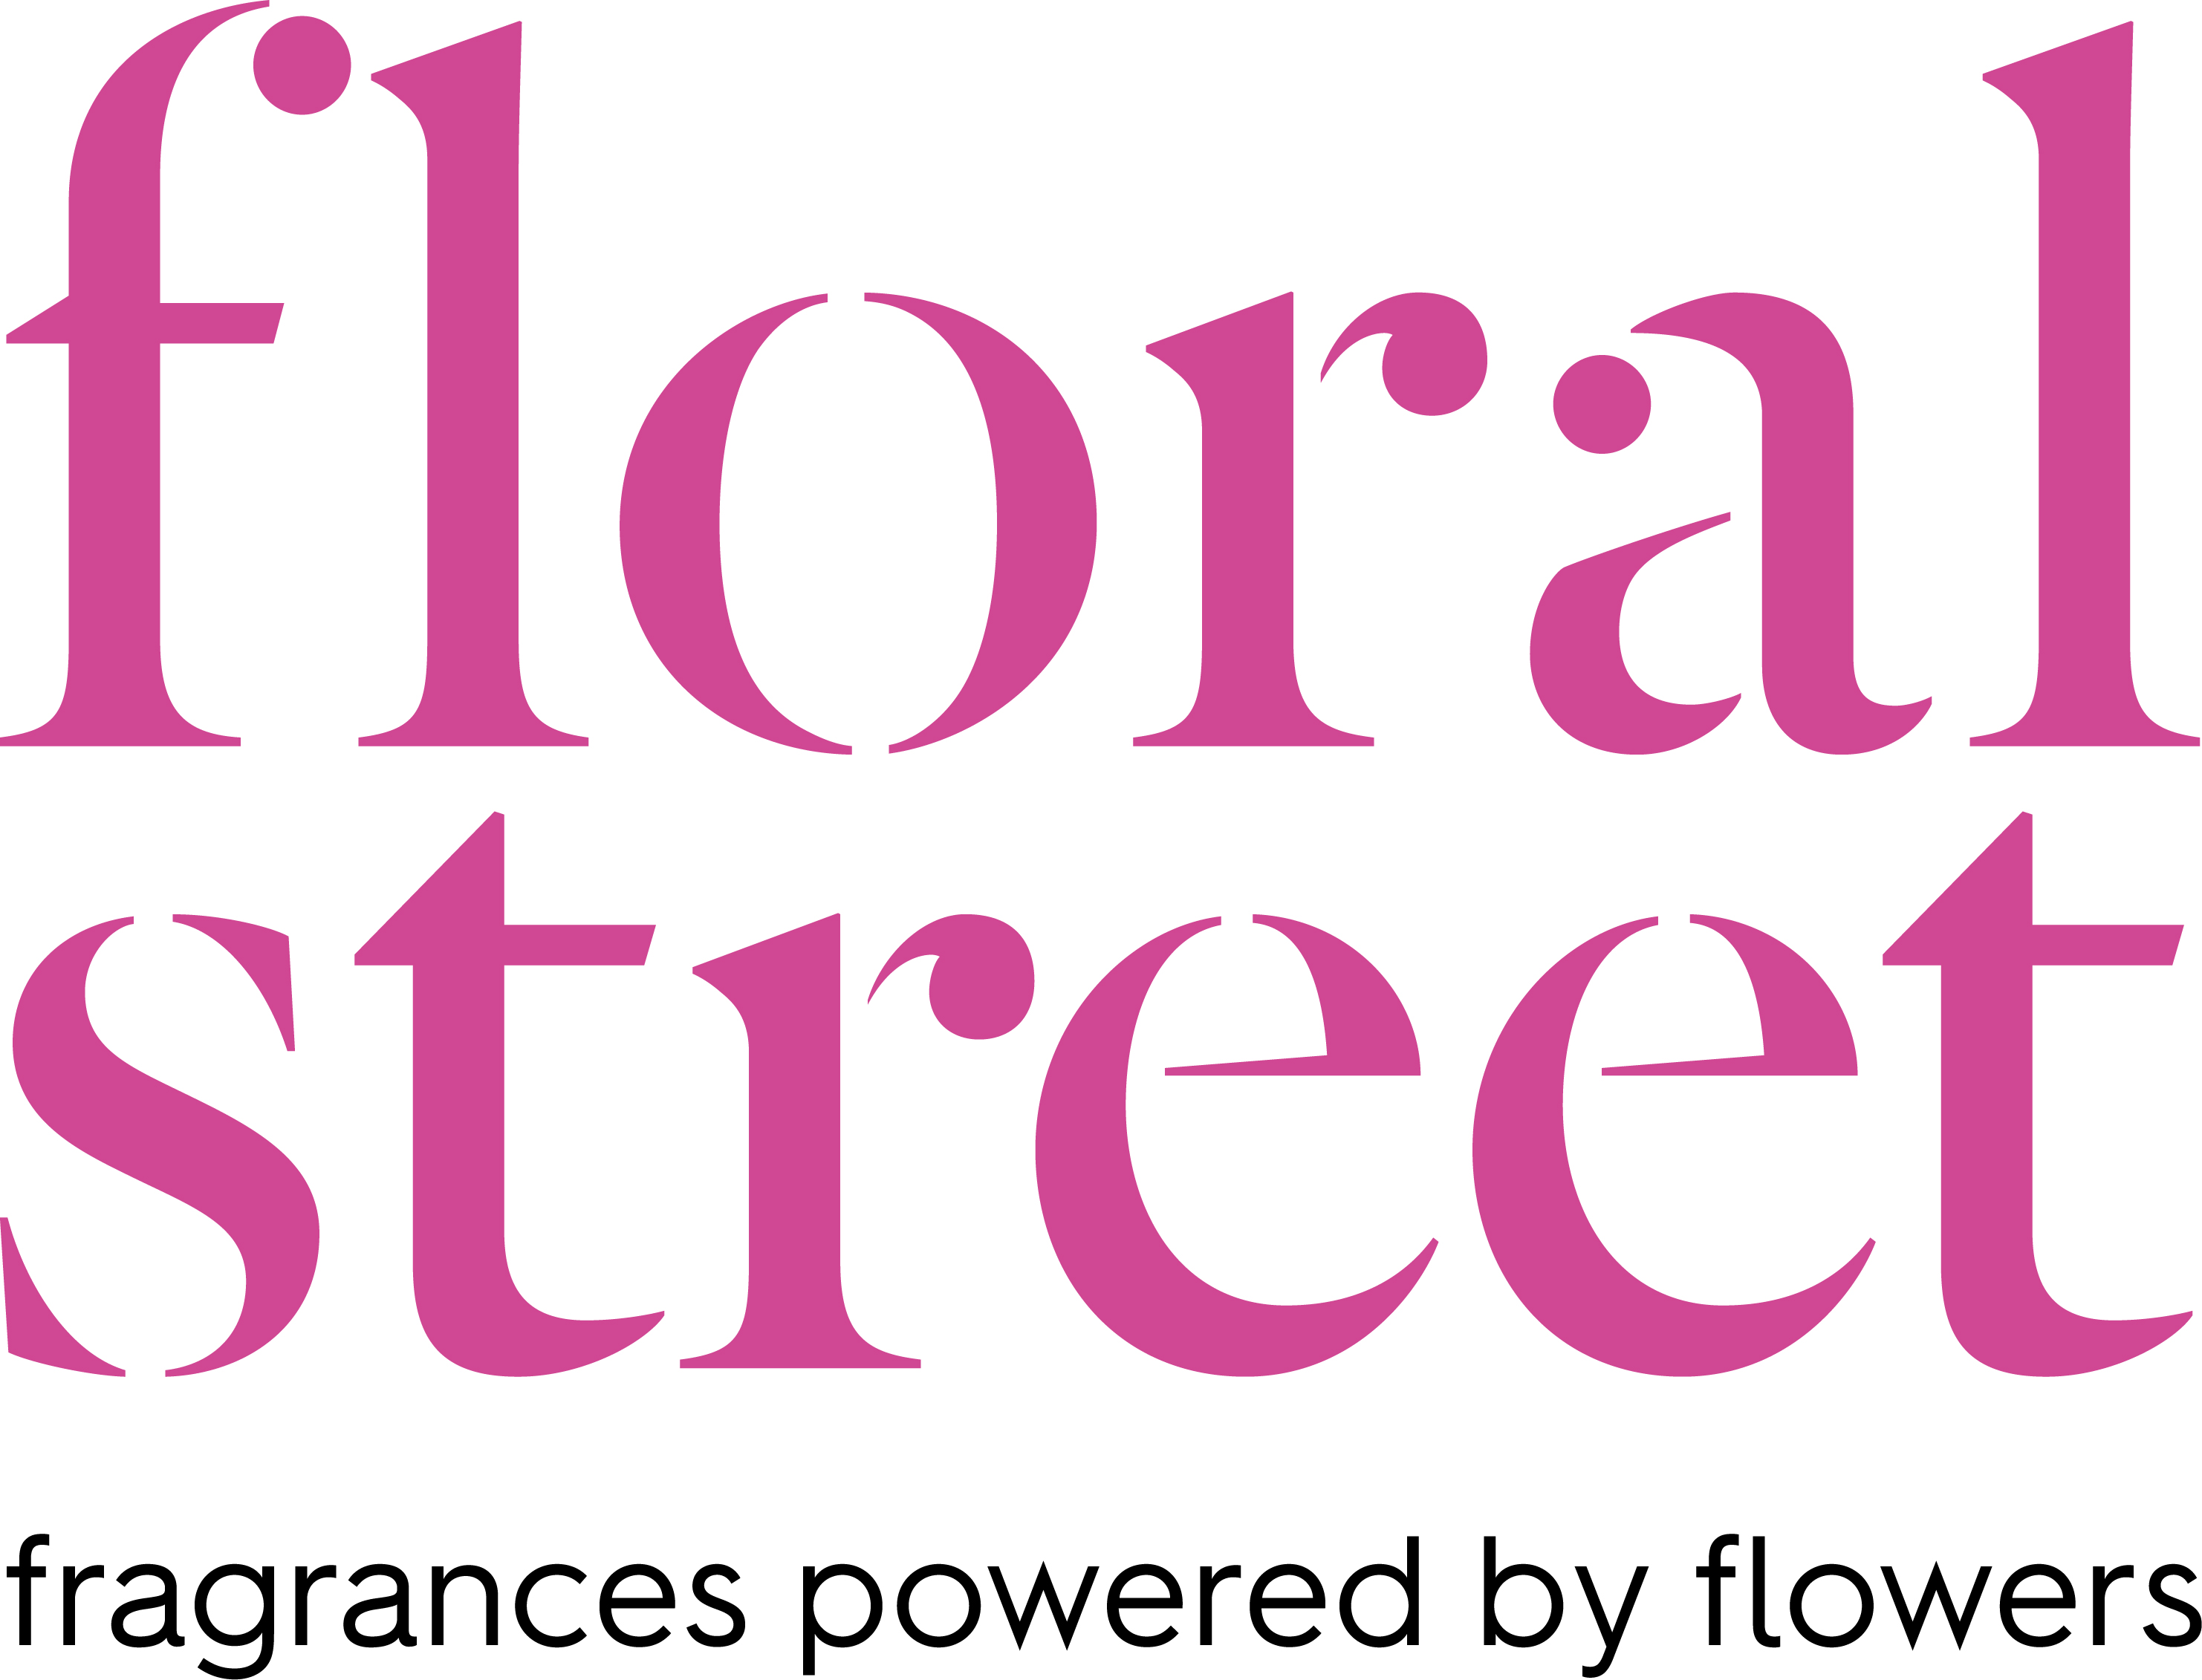 Floral Street Fragrances logo.